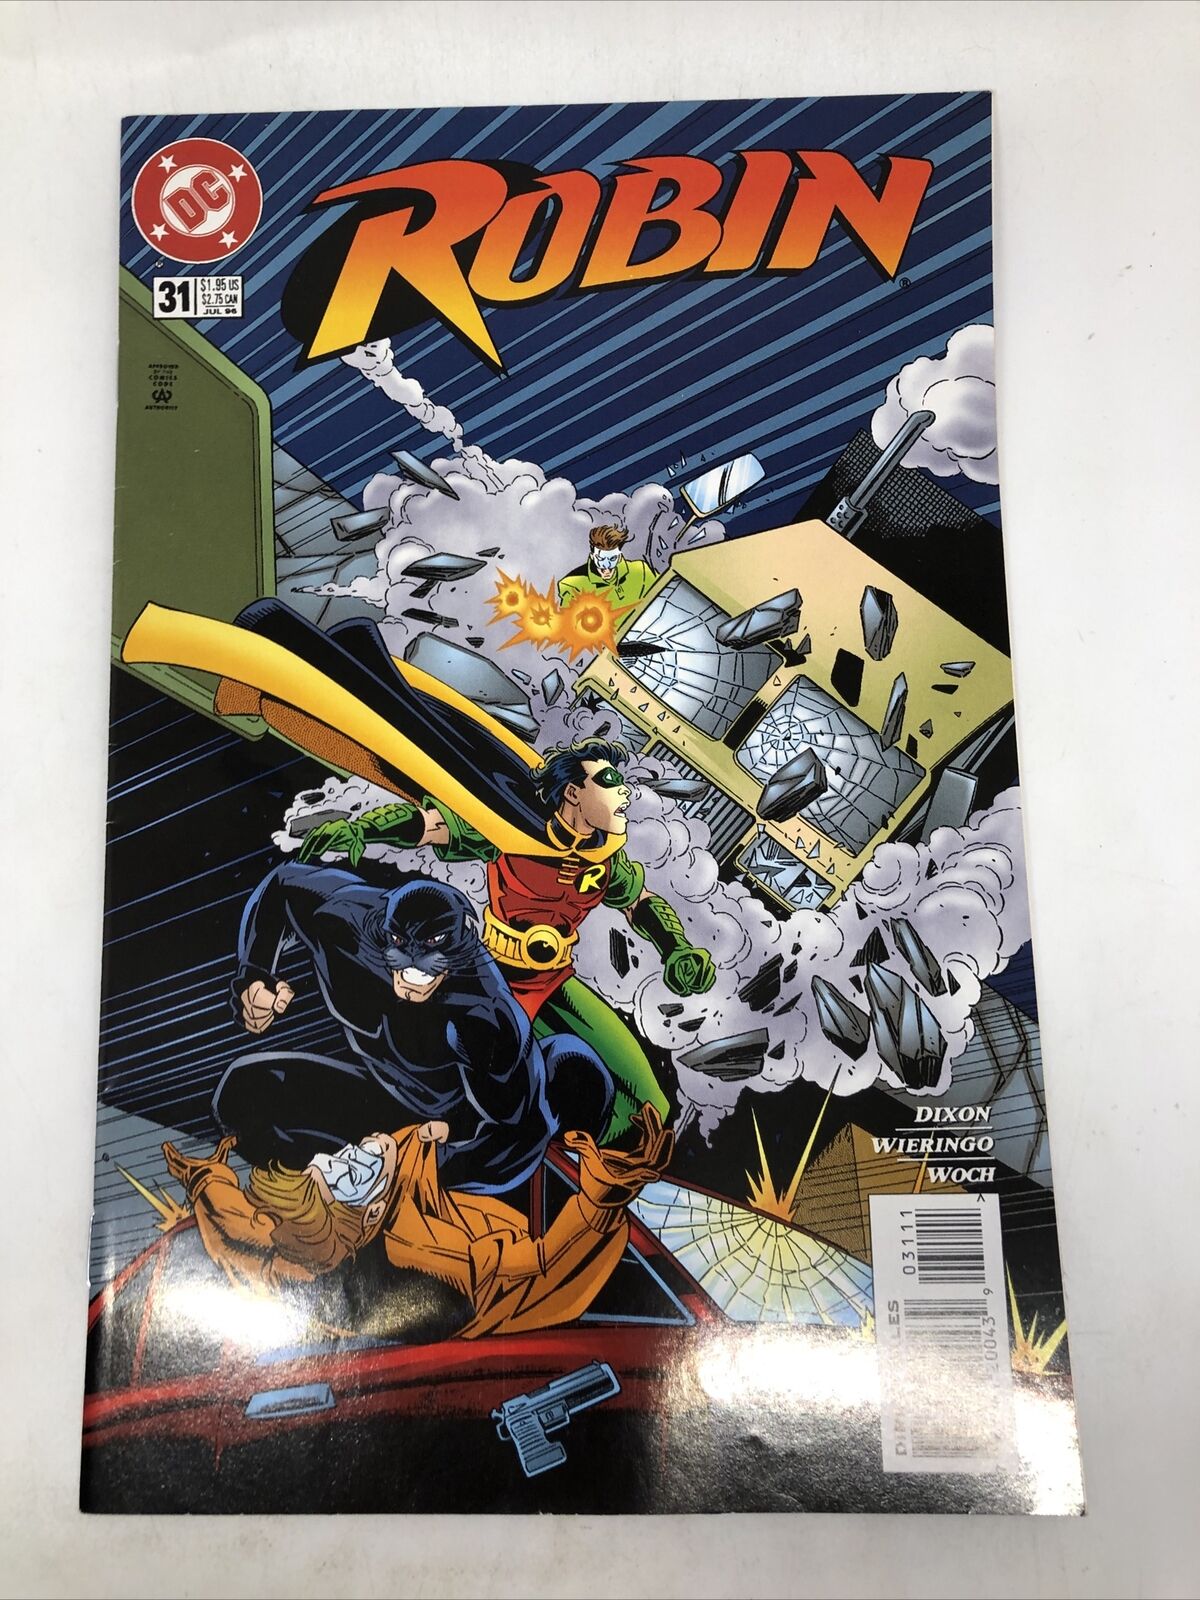 Robin #31 July 1996 DC Comics